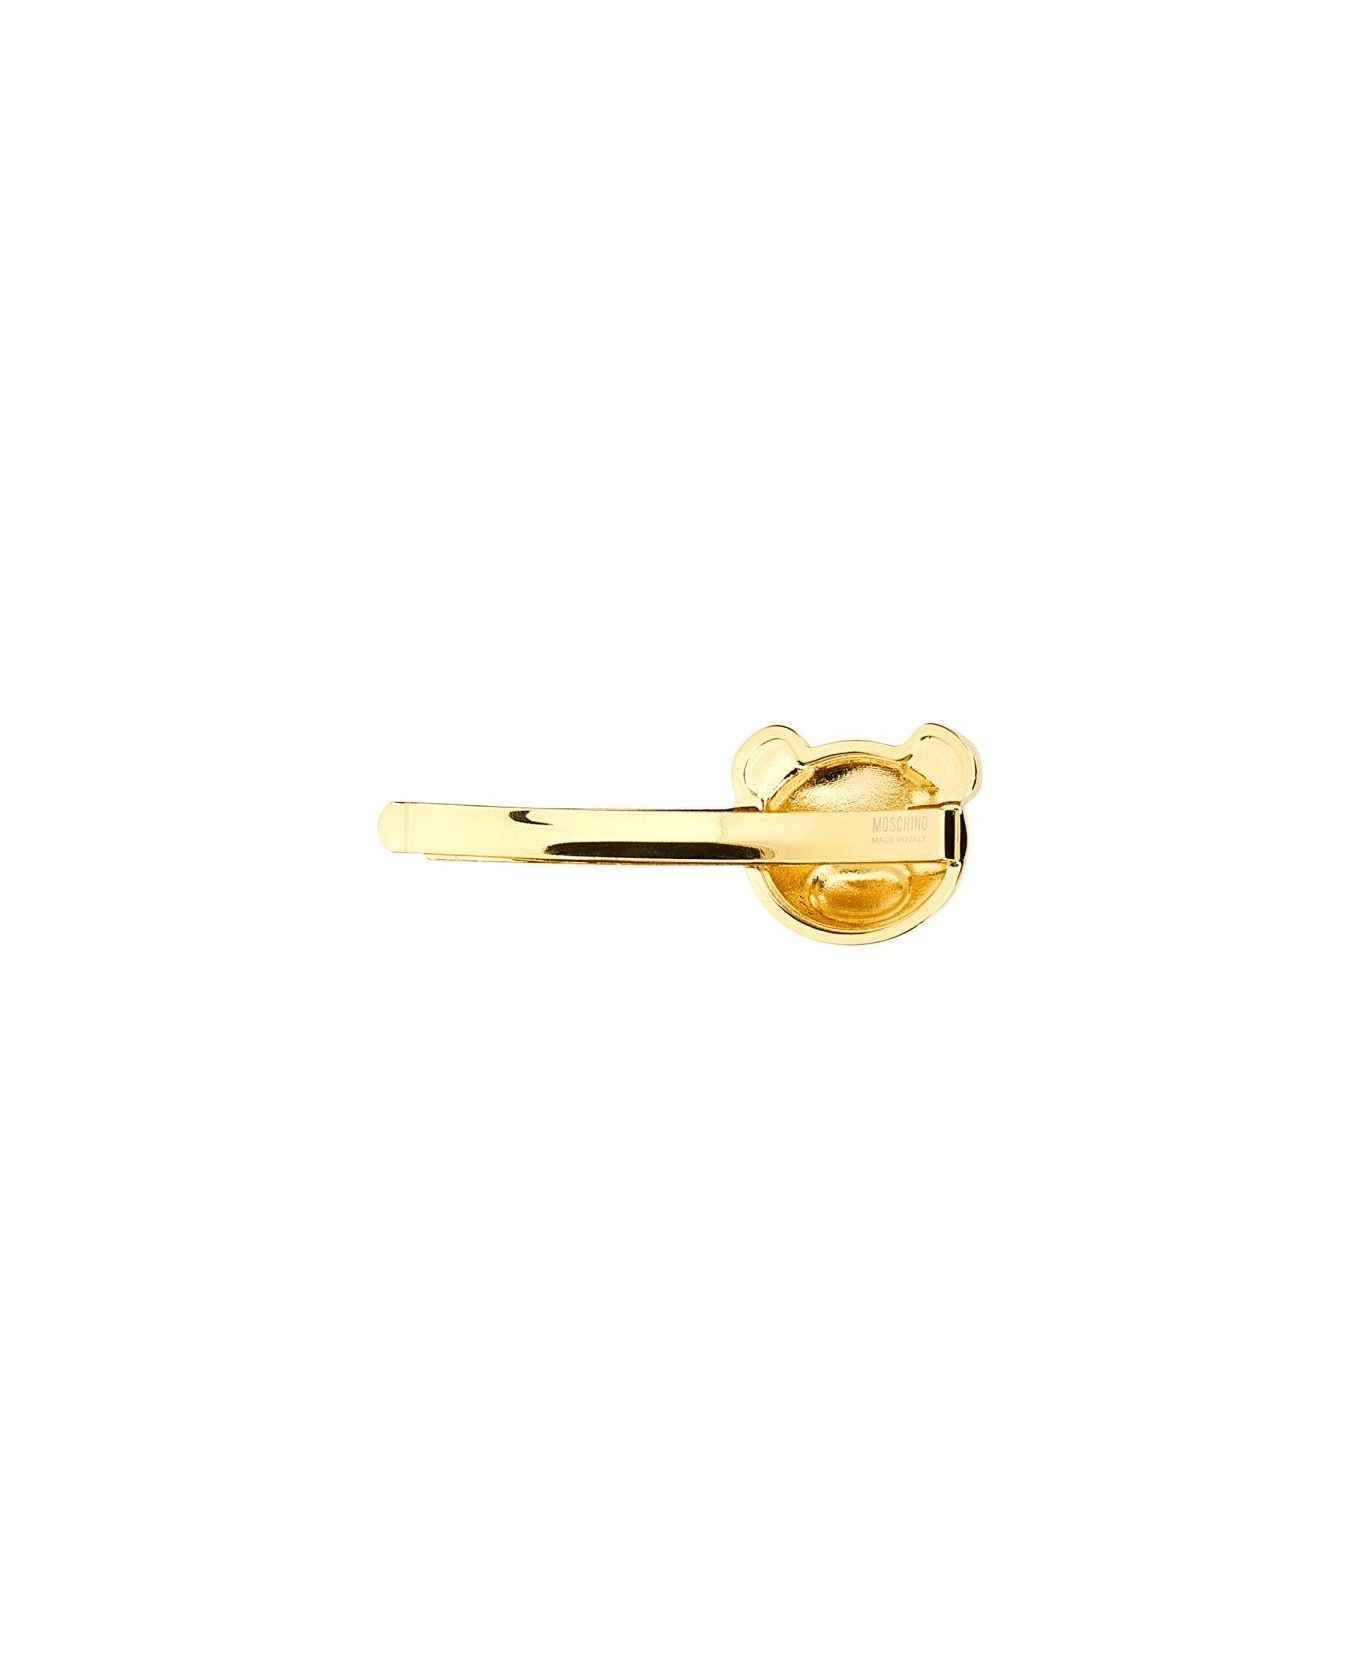 Moschino Teddy Bear Logo Engraved Tie Clip - GOLD